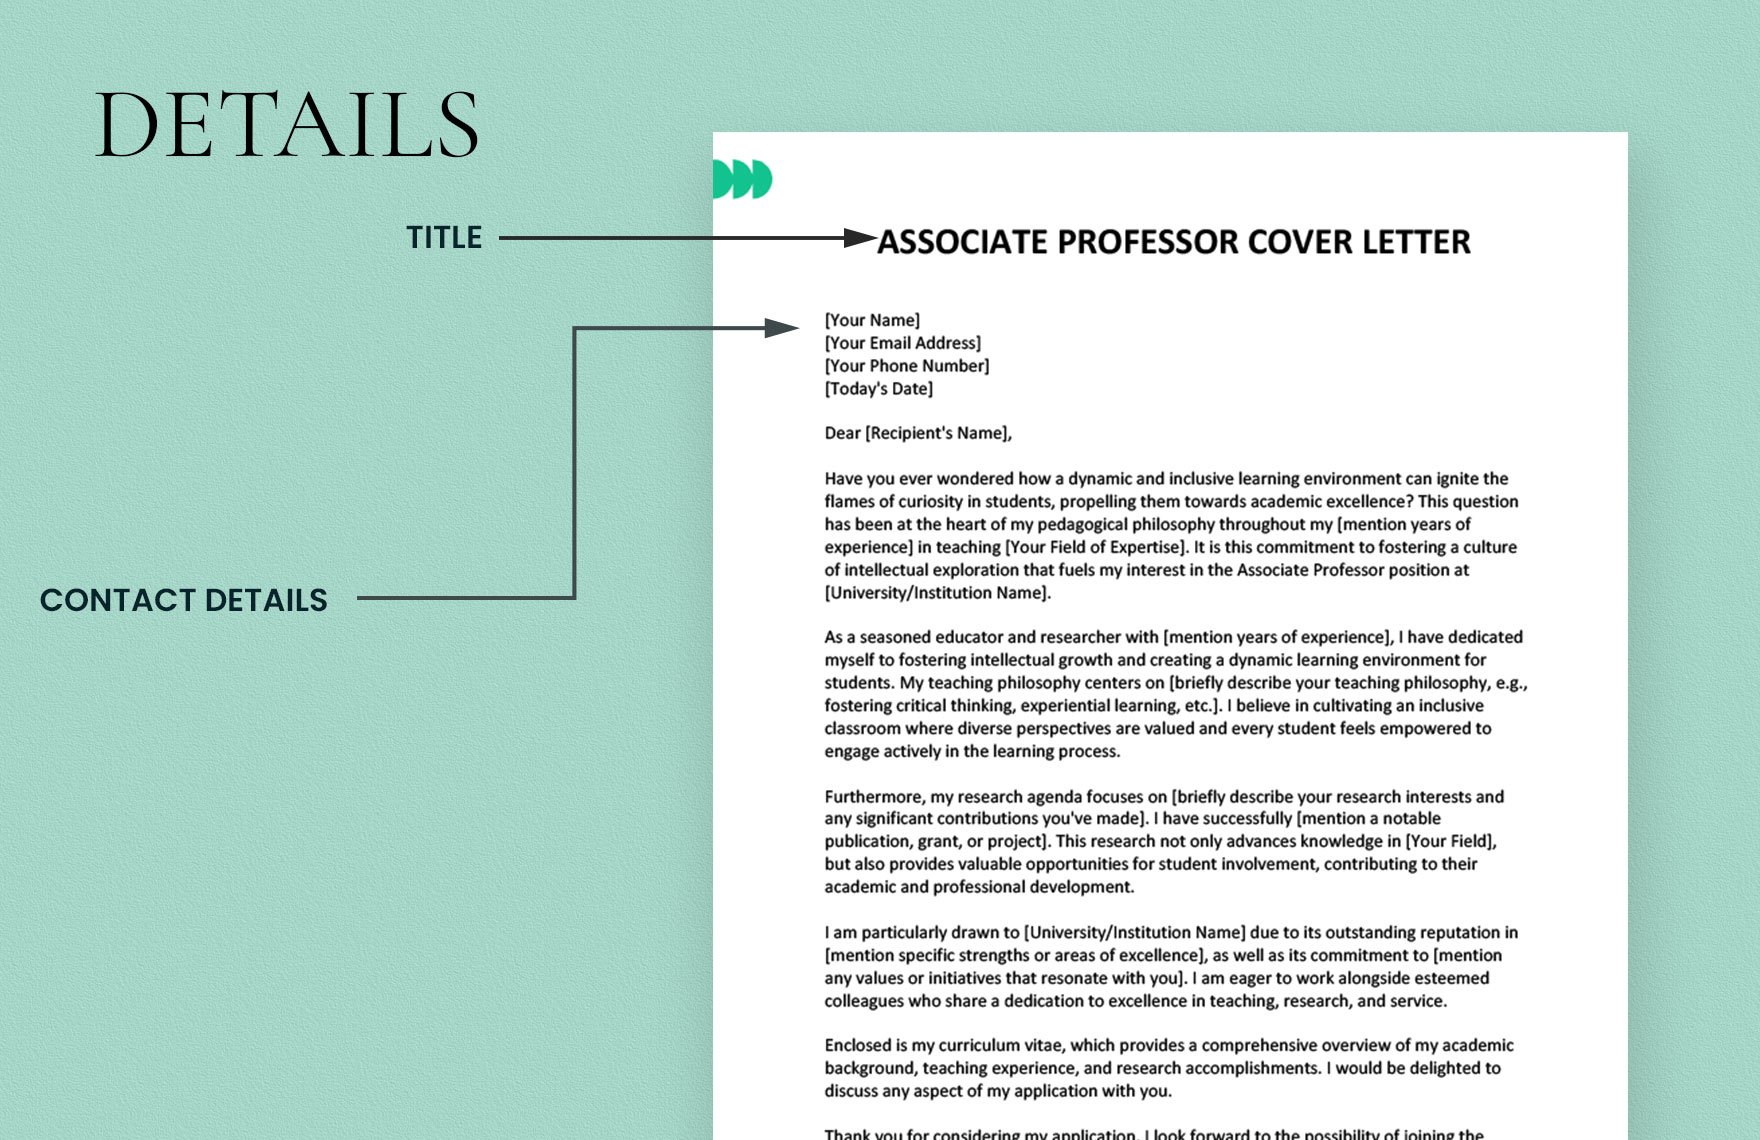 Associate Professor Cover Letter